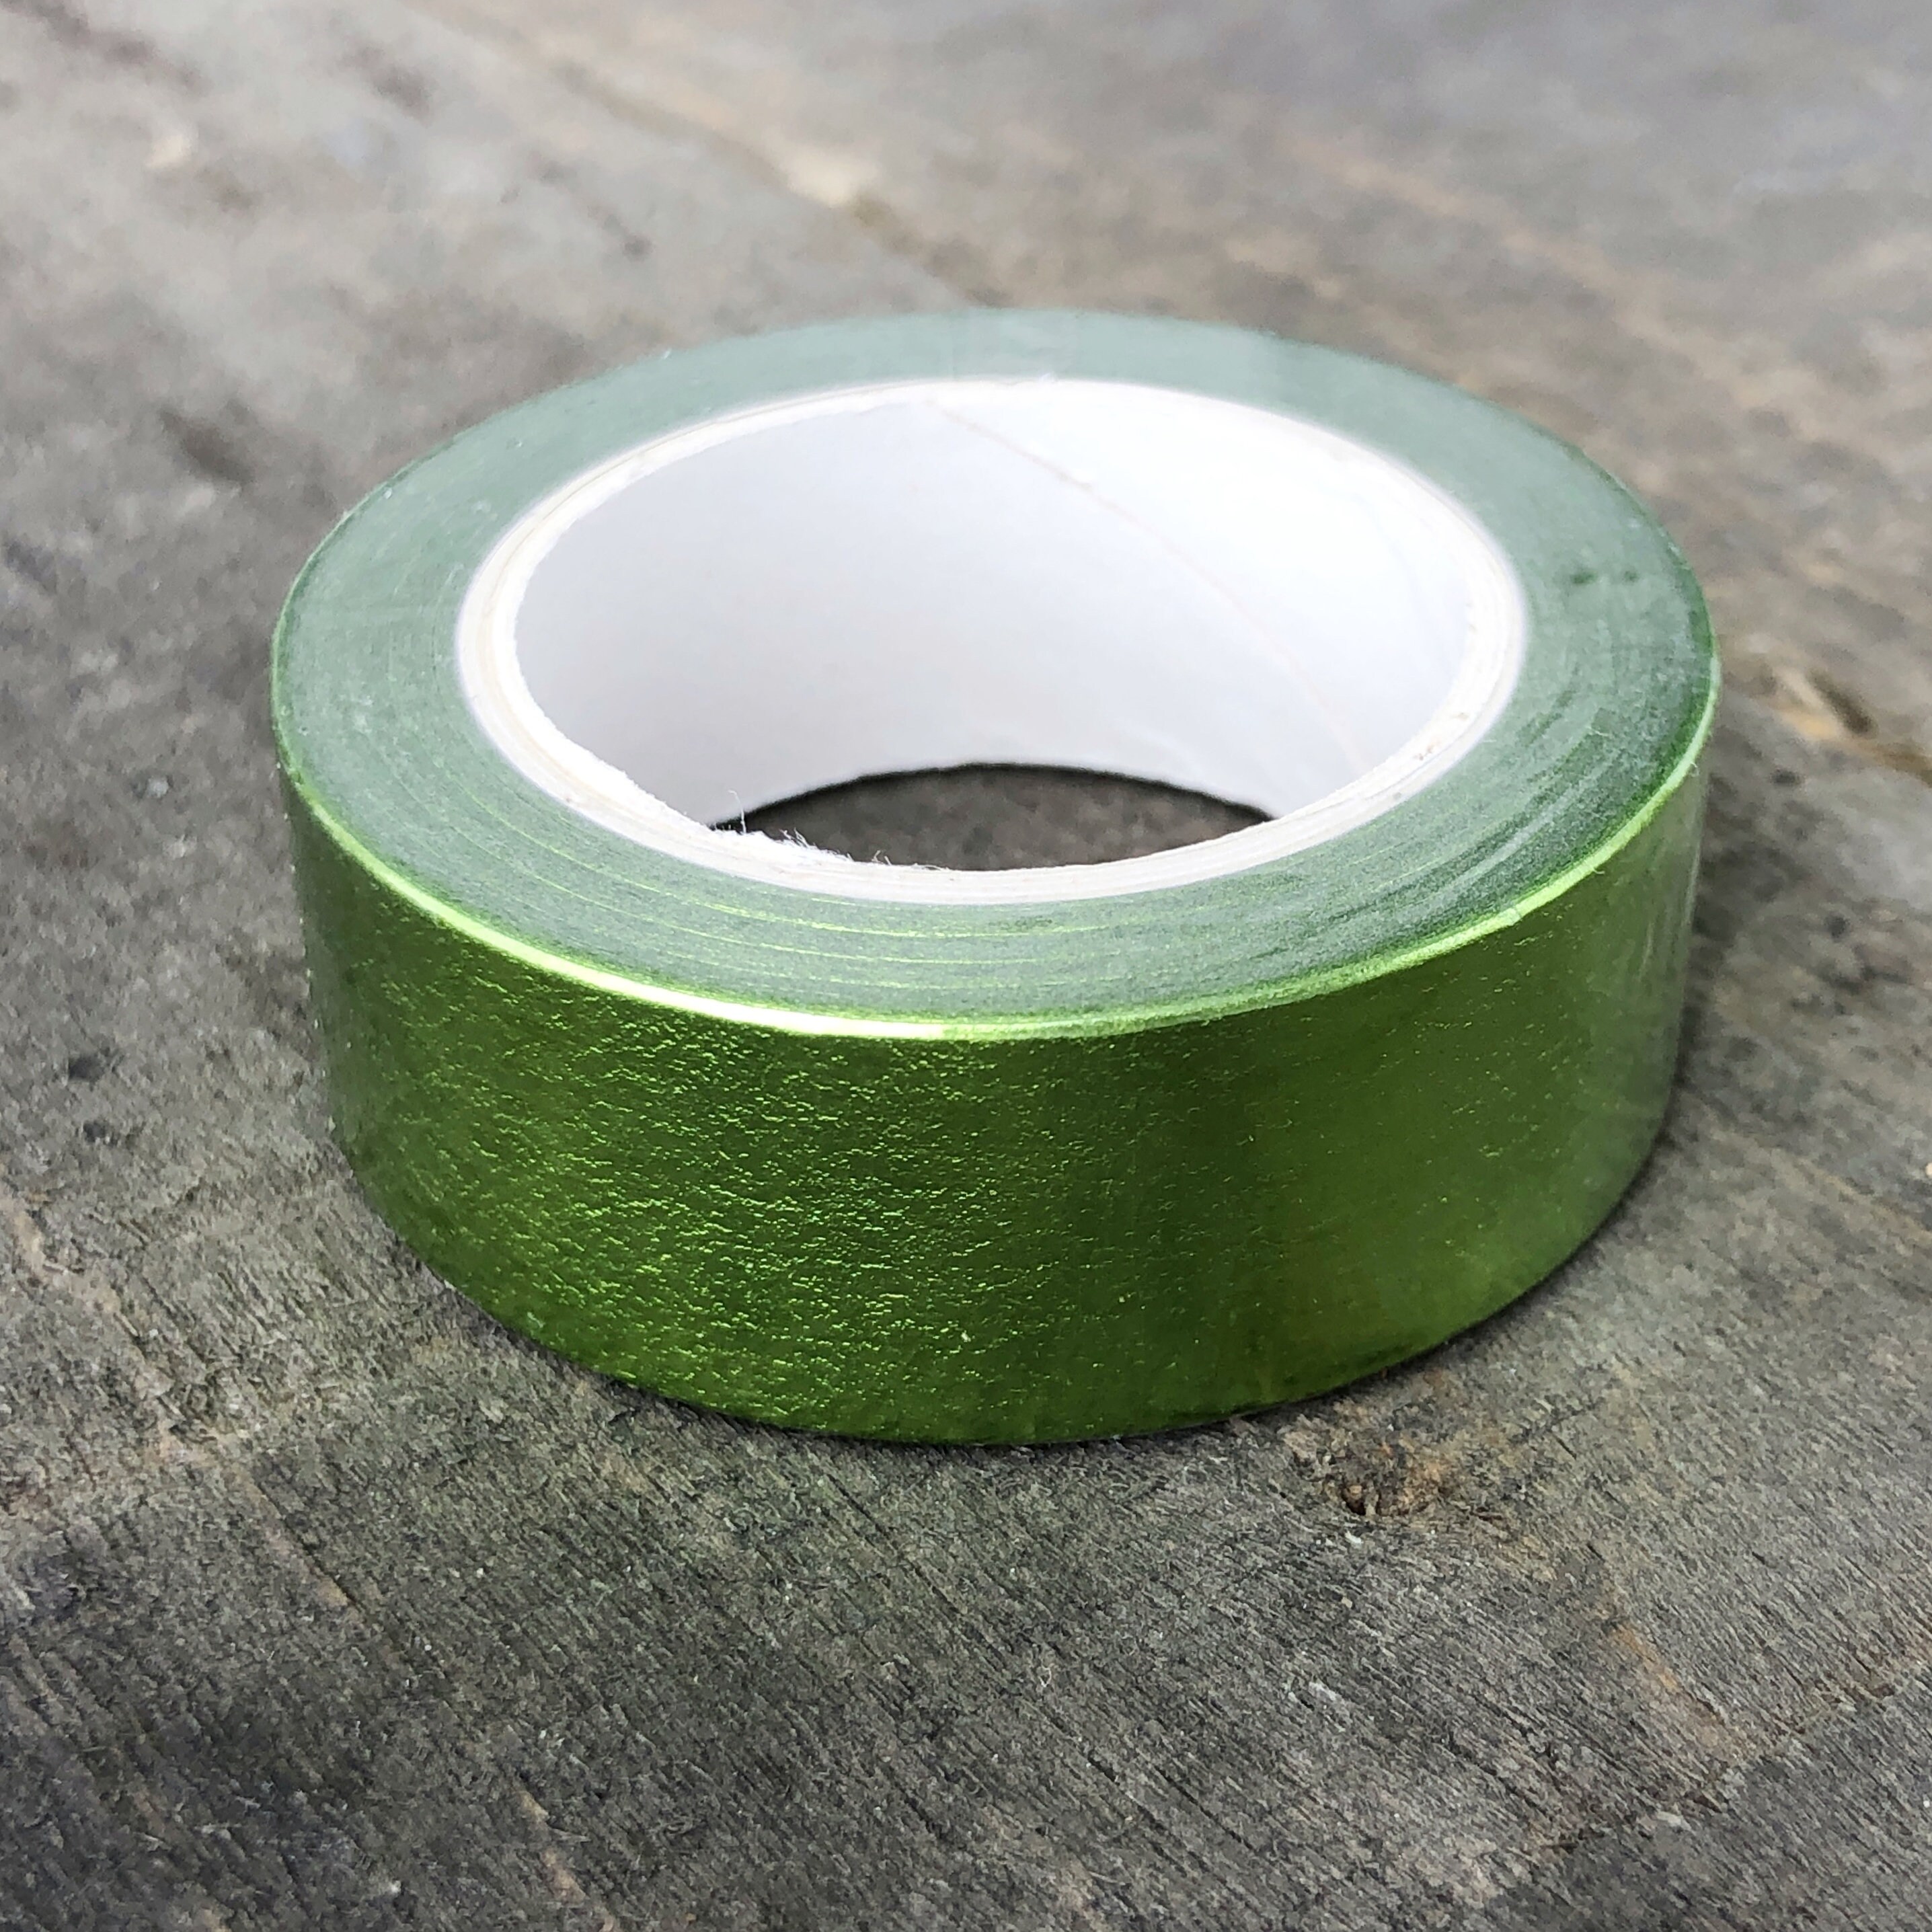 Green Foil Washi Tape 15mm X 10m Roll, Plain Olive Green Metallic